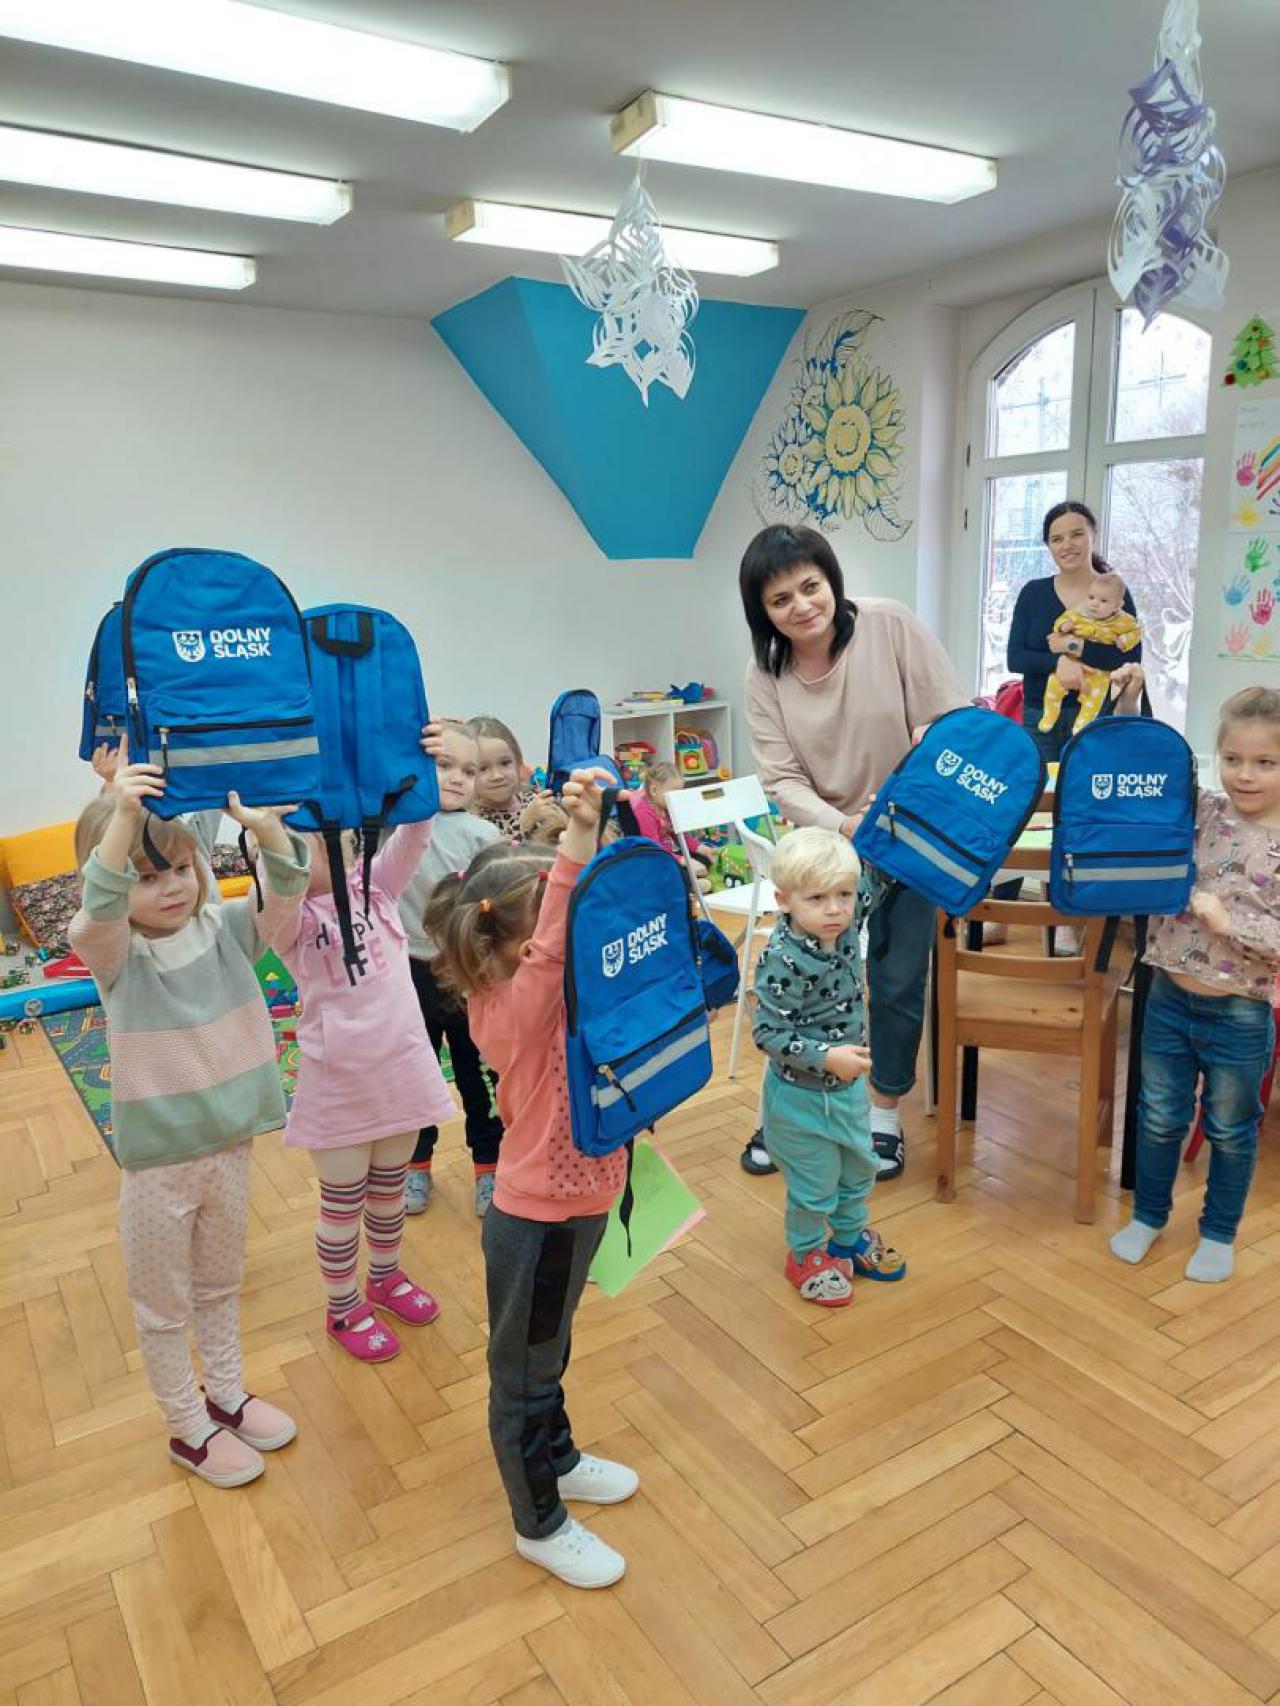 Gwiazdy Siatkówki przekazują pomoc dla ukraińskich dzieci